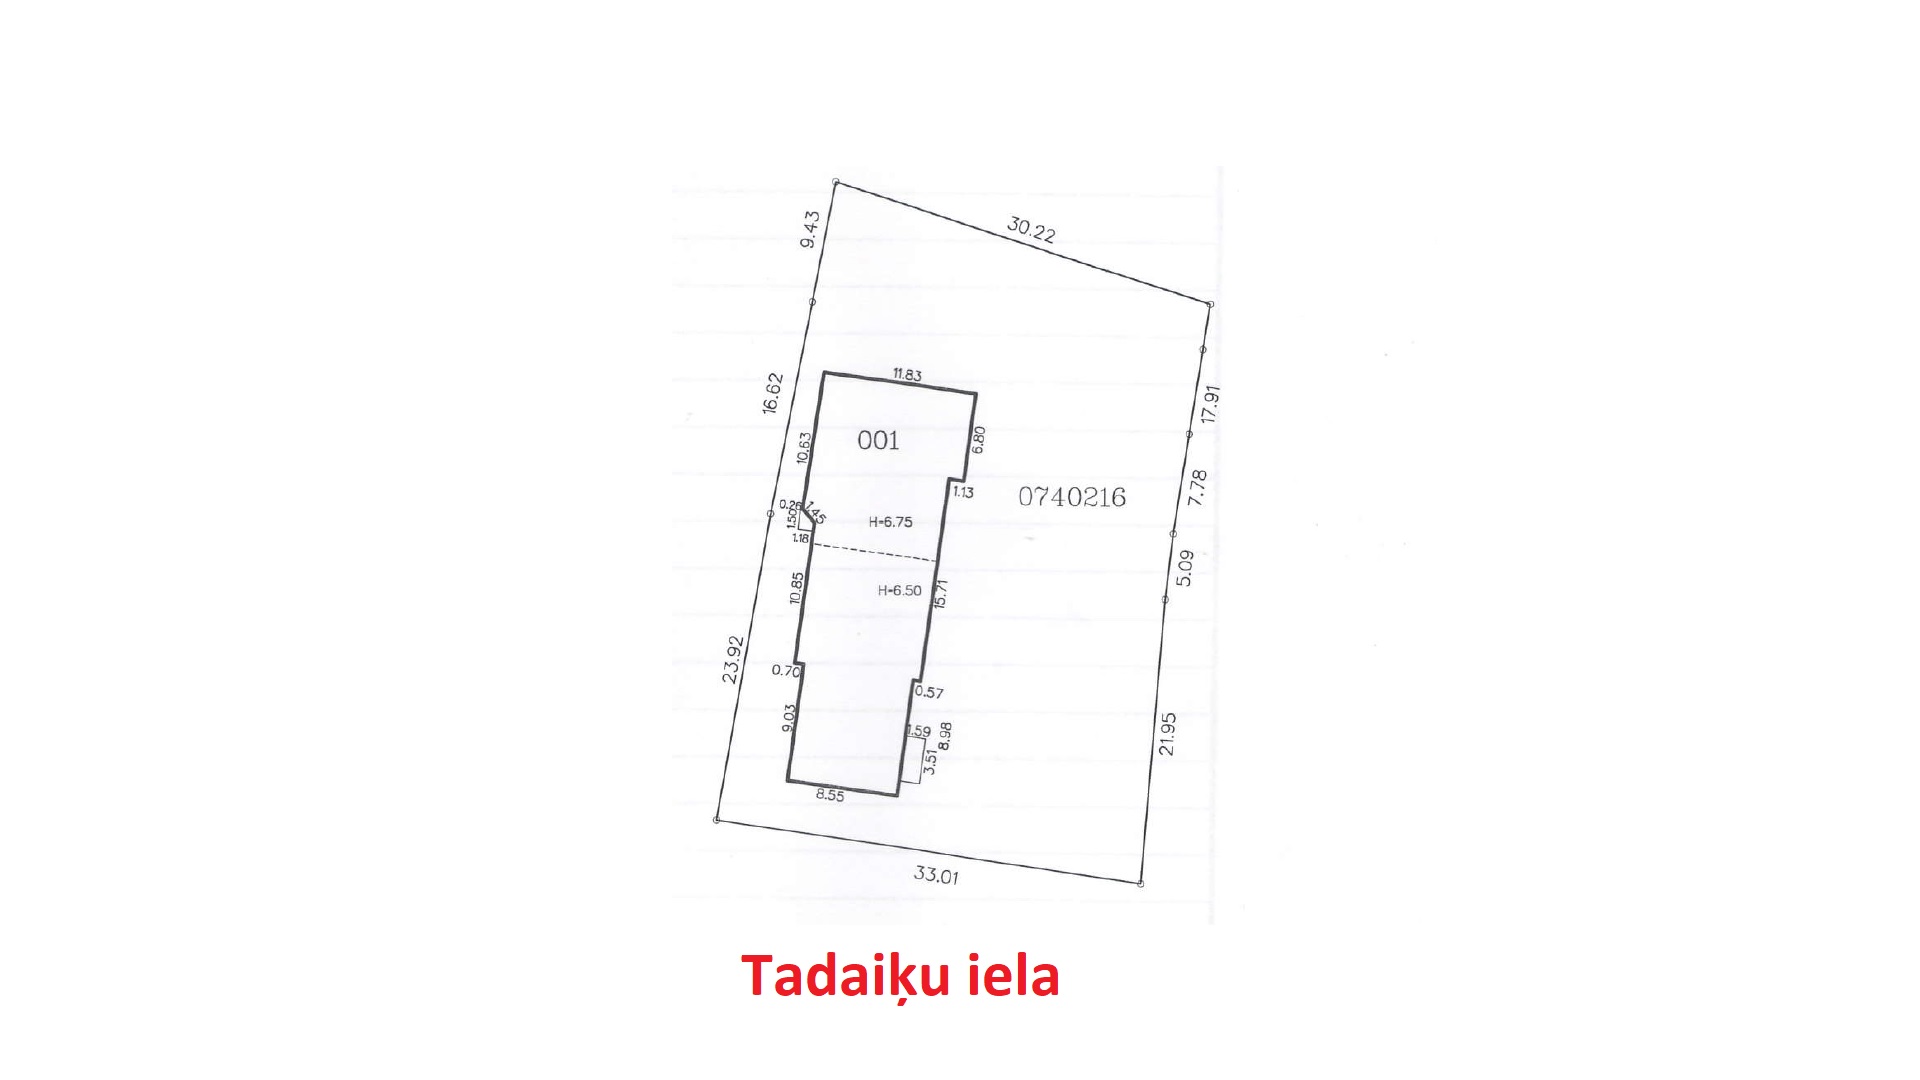 Office for sale, Tadaiķu street - Image 1